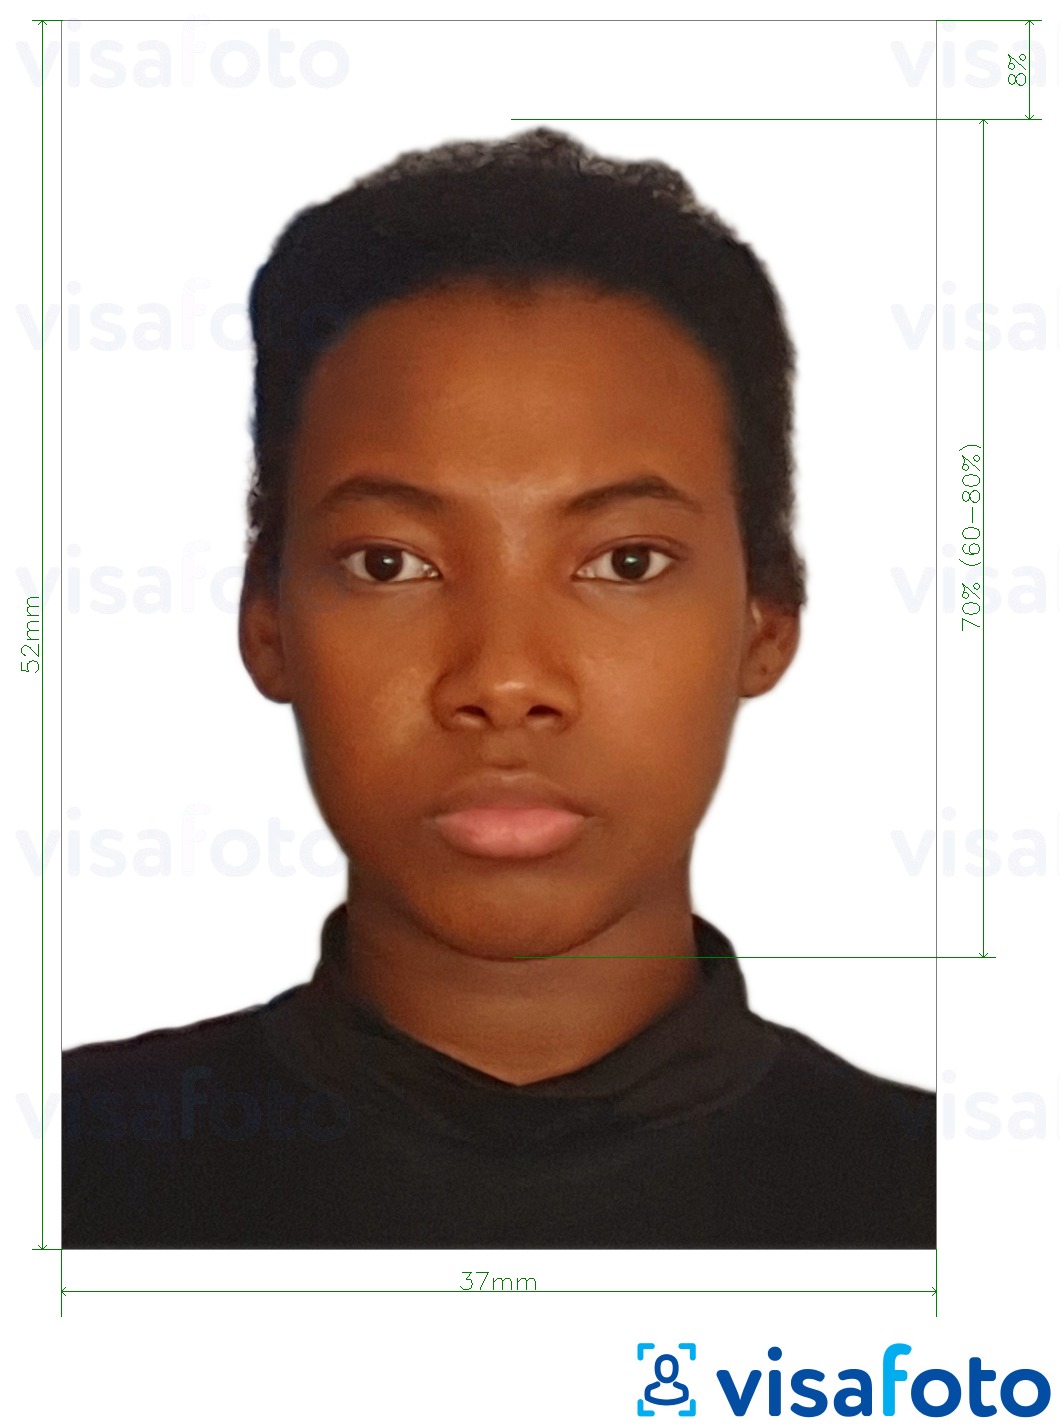 Voorbeeld van foto voor Namibië paspoort 37x52mm (3,7x5,2 cm) met exacte maatspecificatie